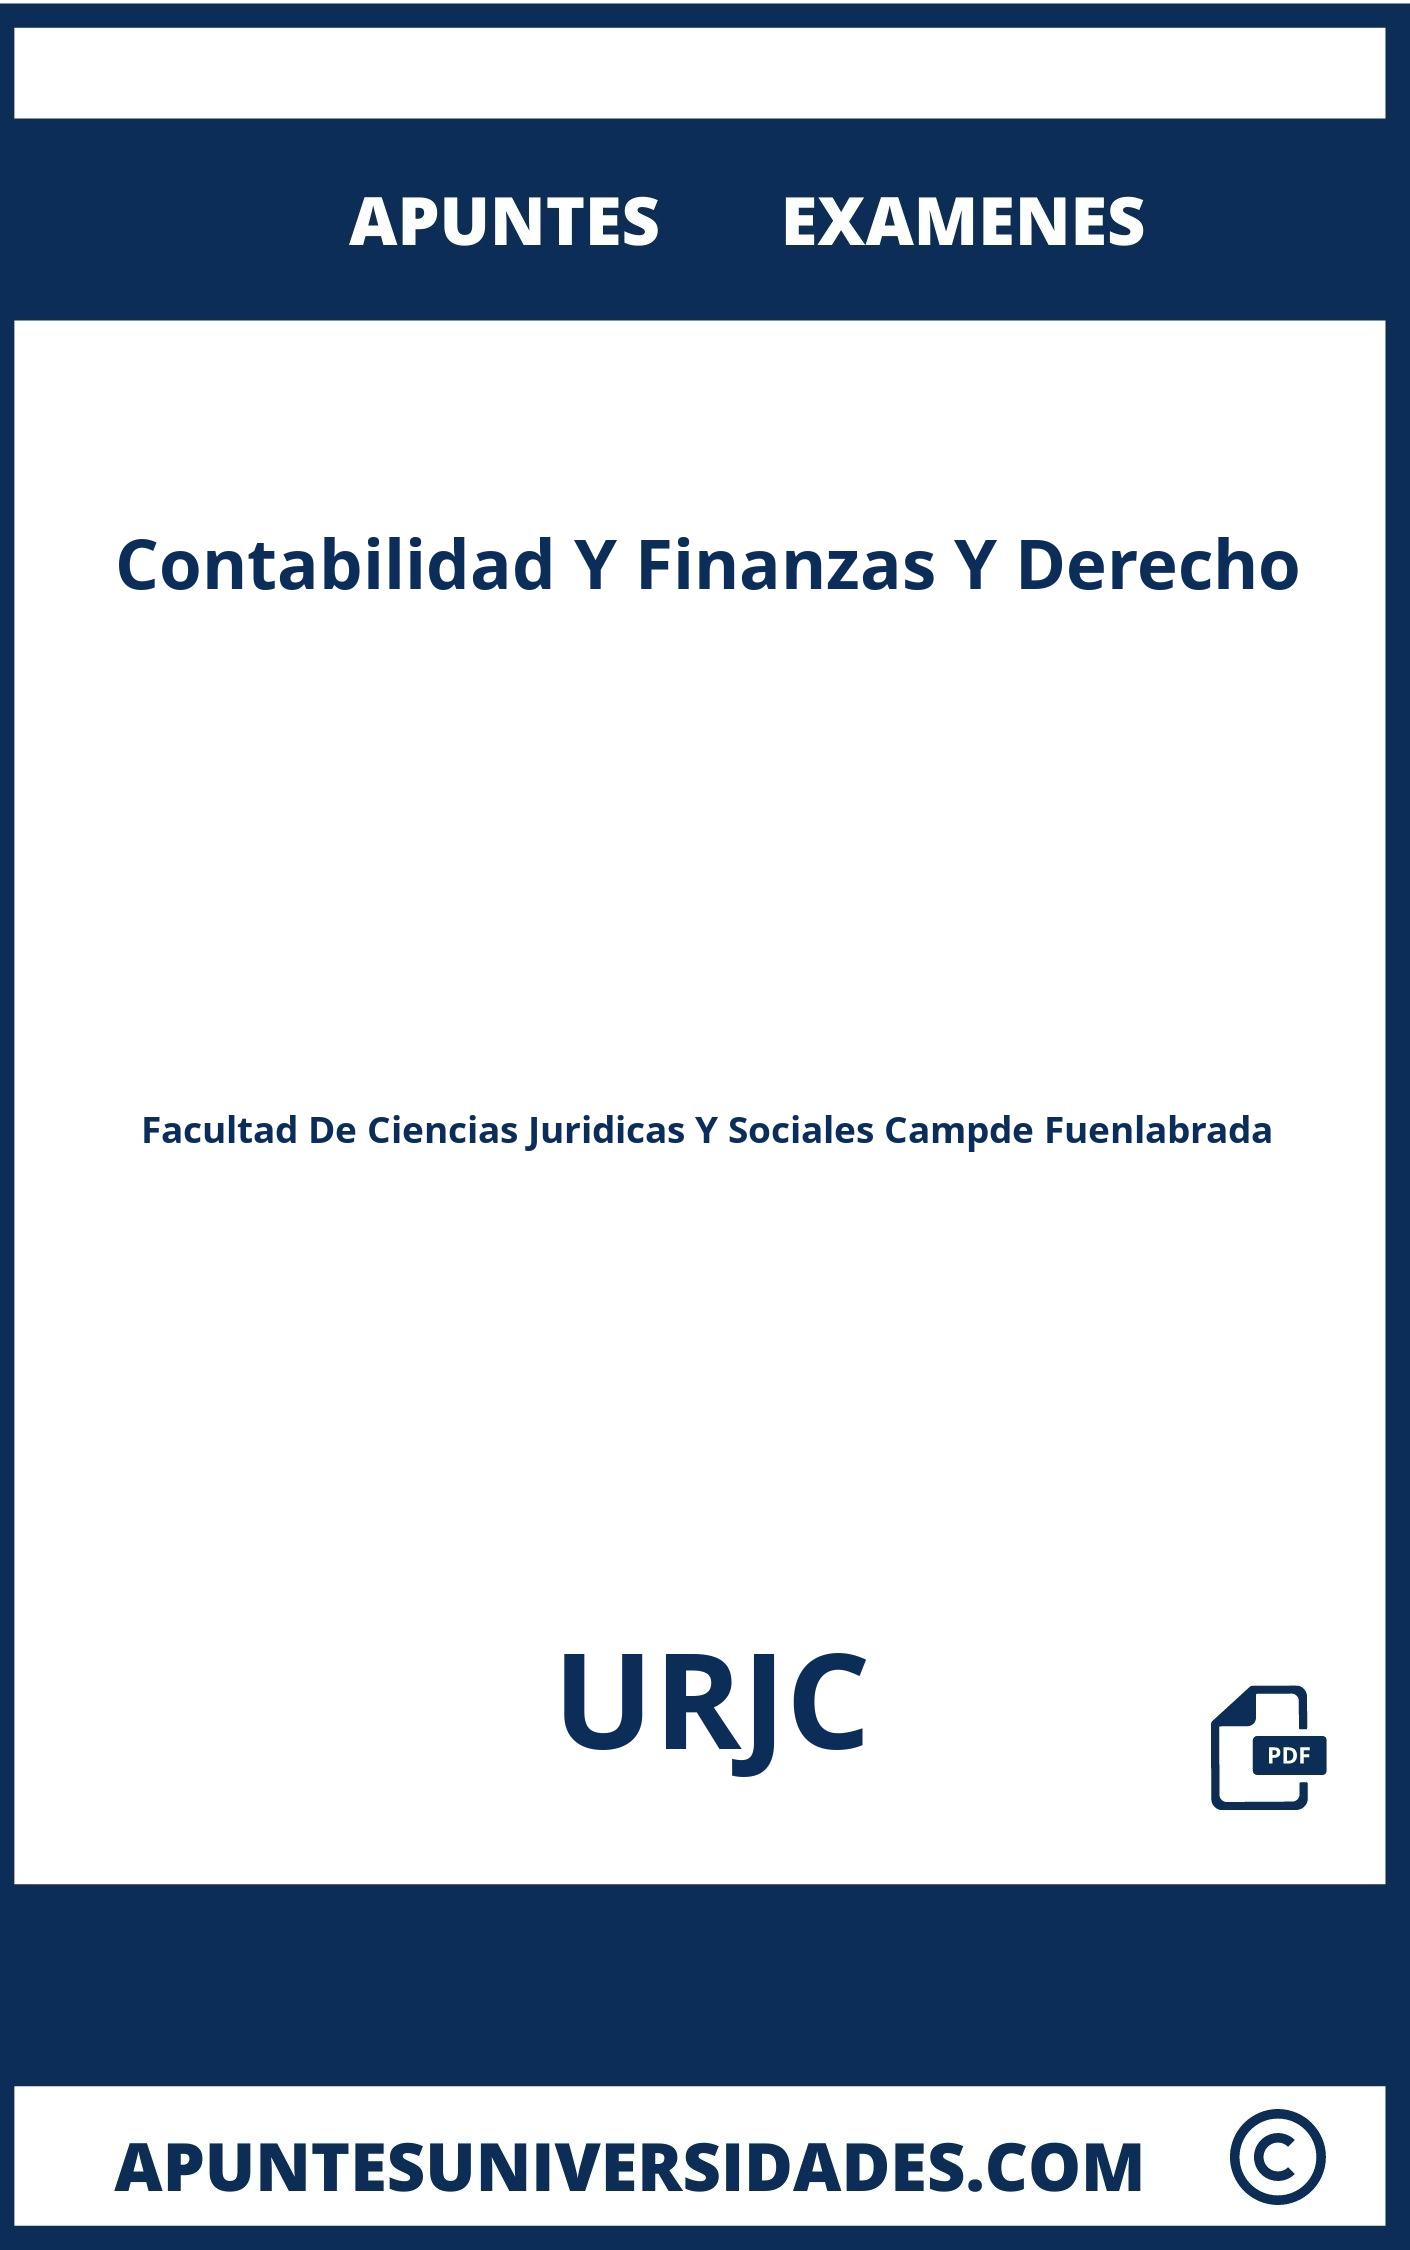 Examenes y Apuntes de Contabilidad Y Finanzas Y Derecho URJC